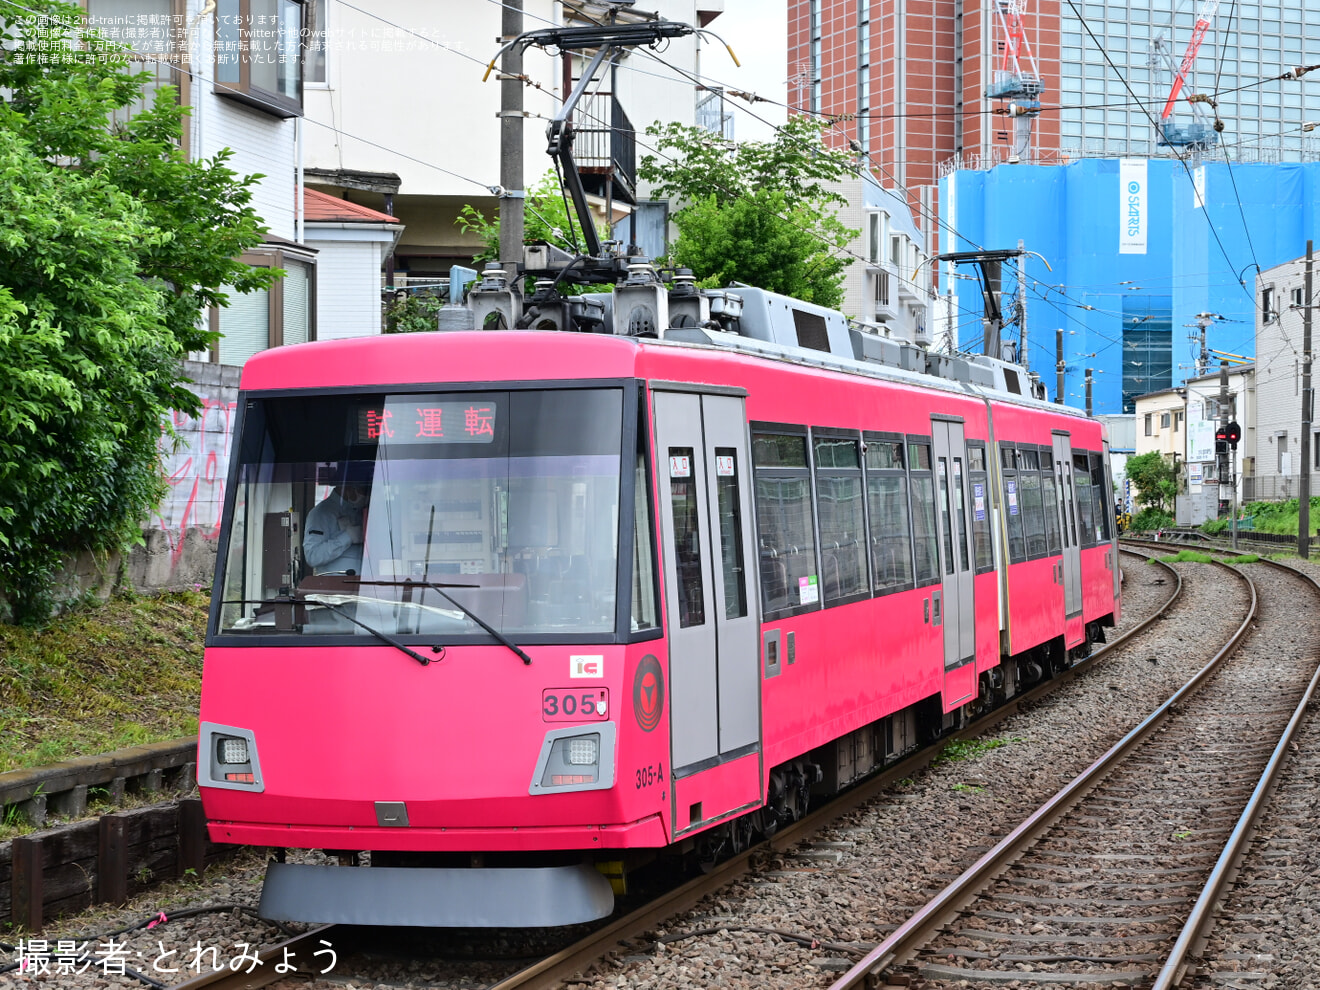 【東急】世田谷線300系305F試運転の拡大写真